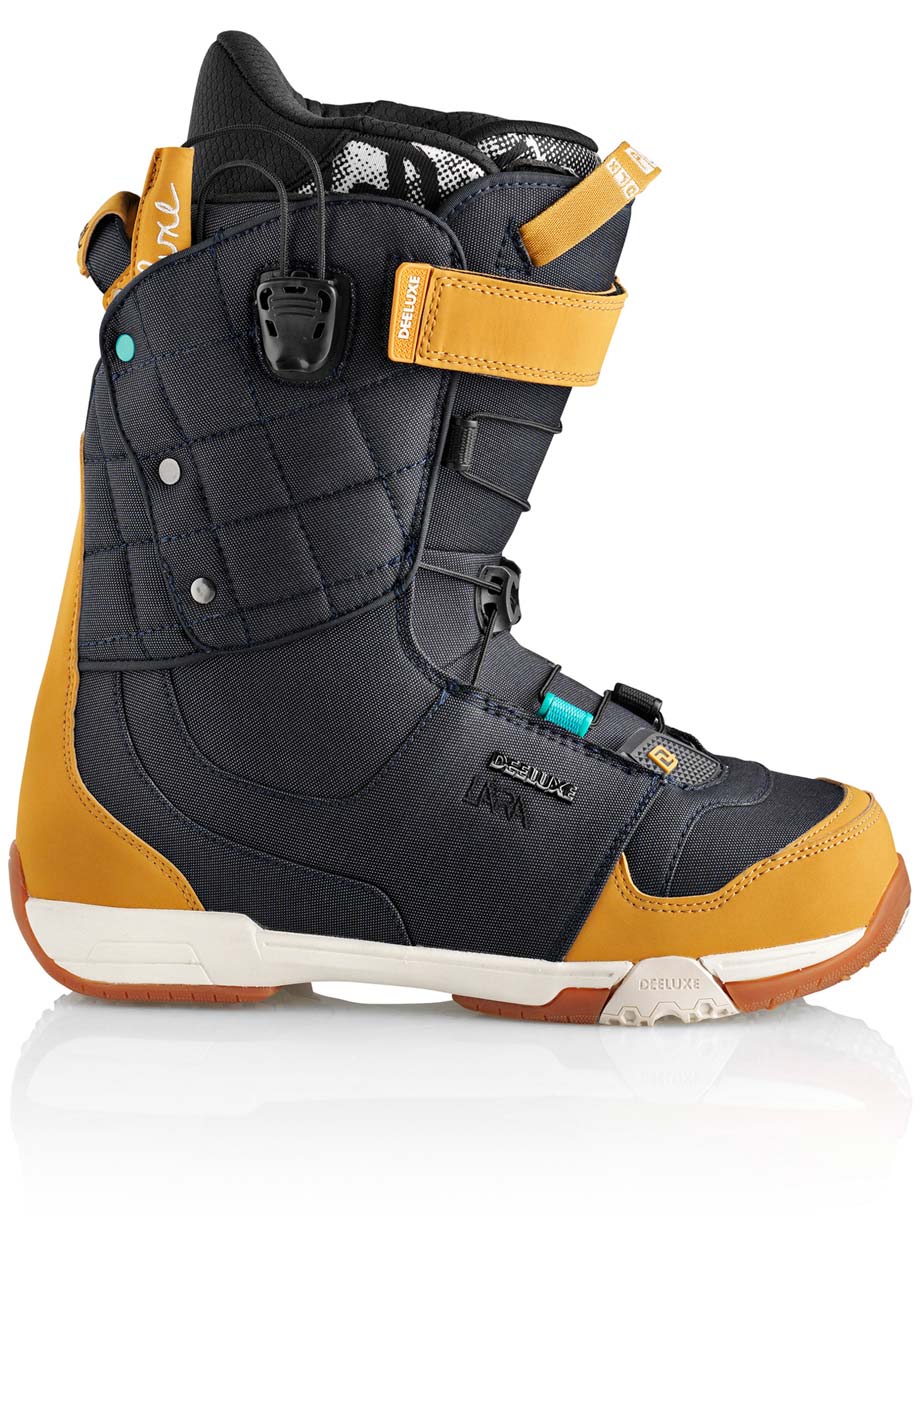 Ботинки сноубордические Deeluxe Ray Lara  размер 25,0 denim (темный джинс + беж кож.зам) 2013 год фото 